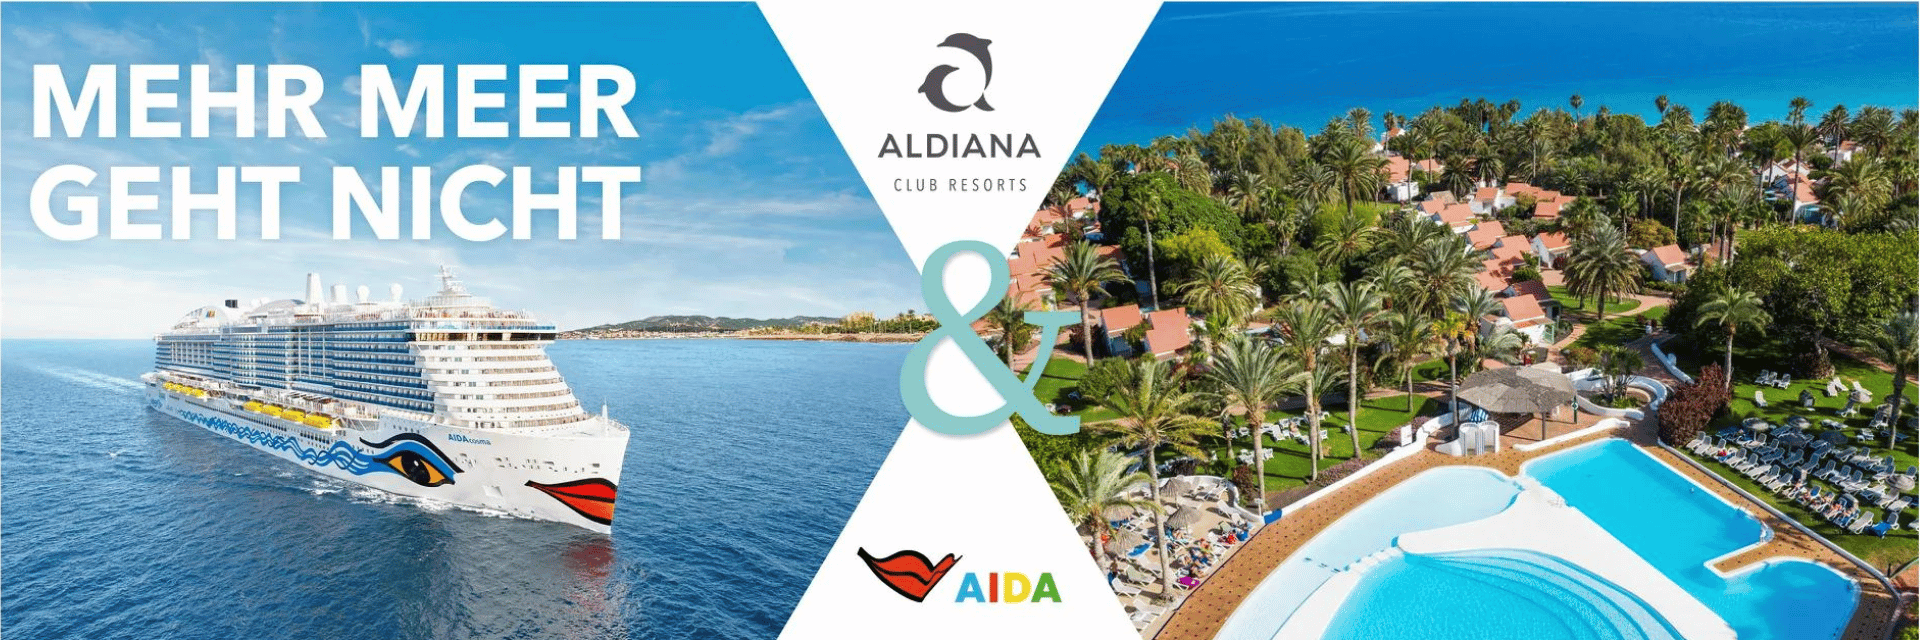 ALDIANA_AIDA